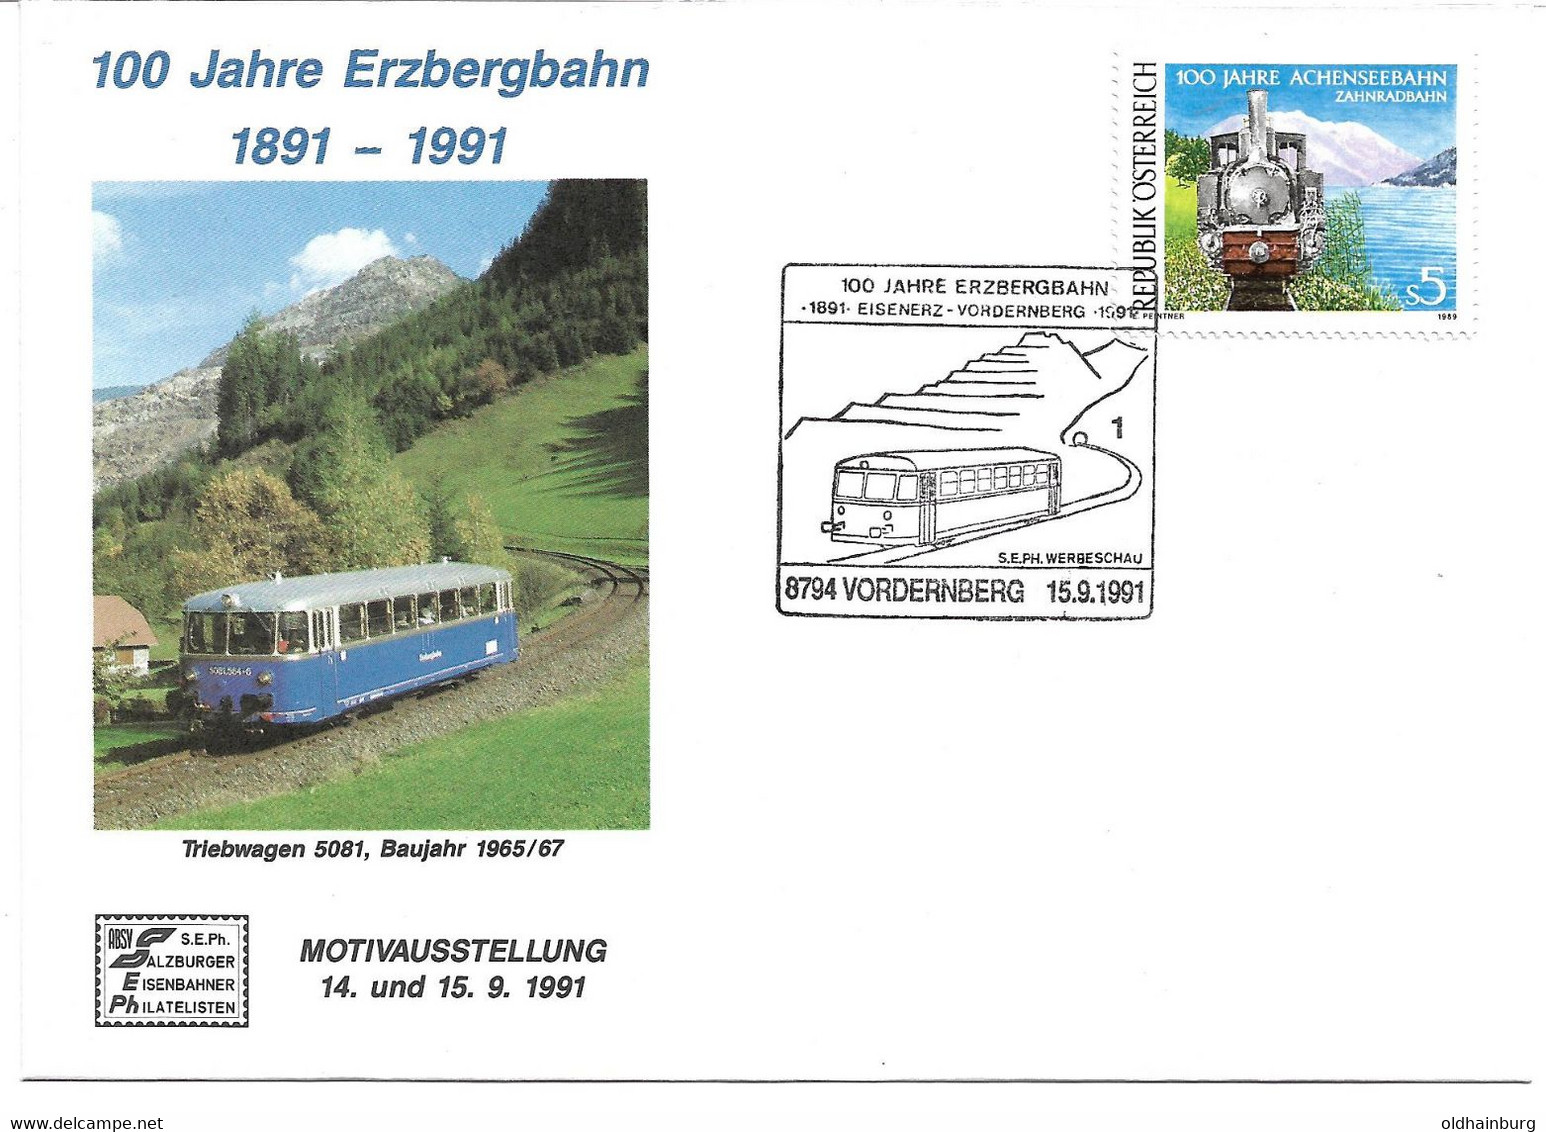 2132w: Heimatbeleg 8794 Vordernberg, Motiv "Eisenbahn" Aus 1991, 100 Jahre Erzbergbahn - Vordernberg